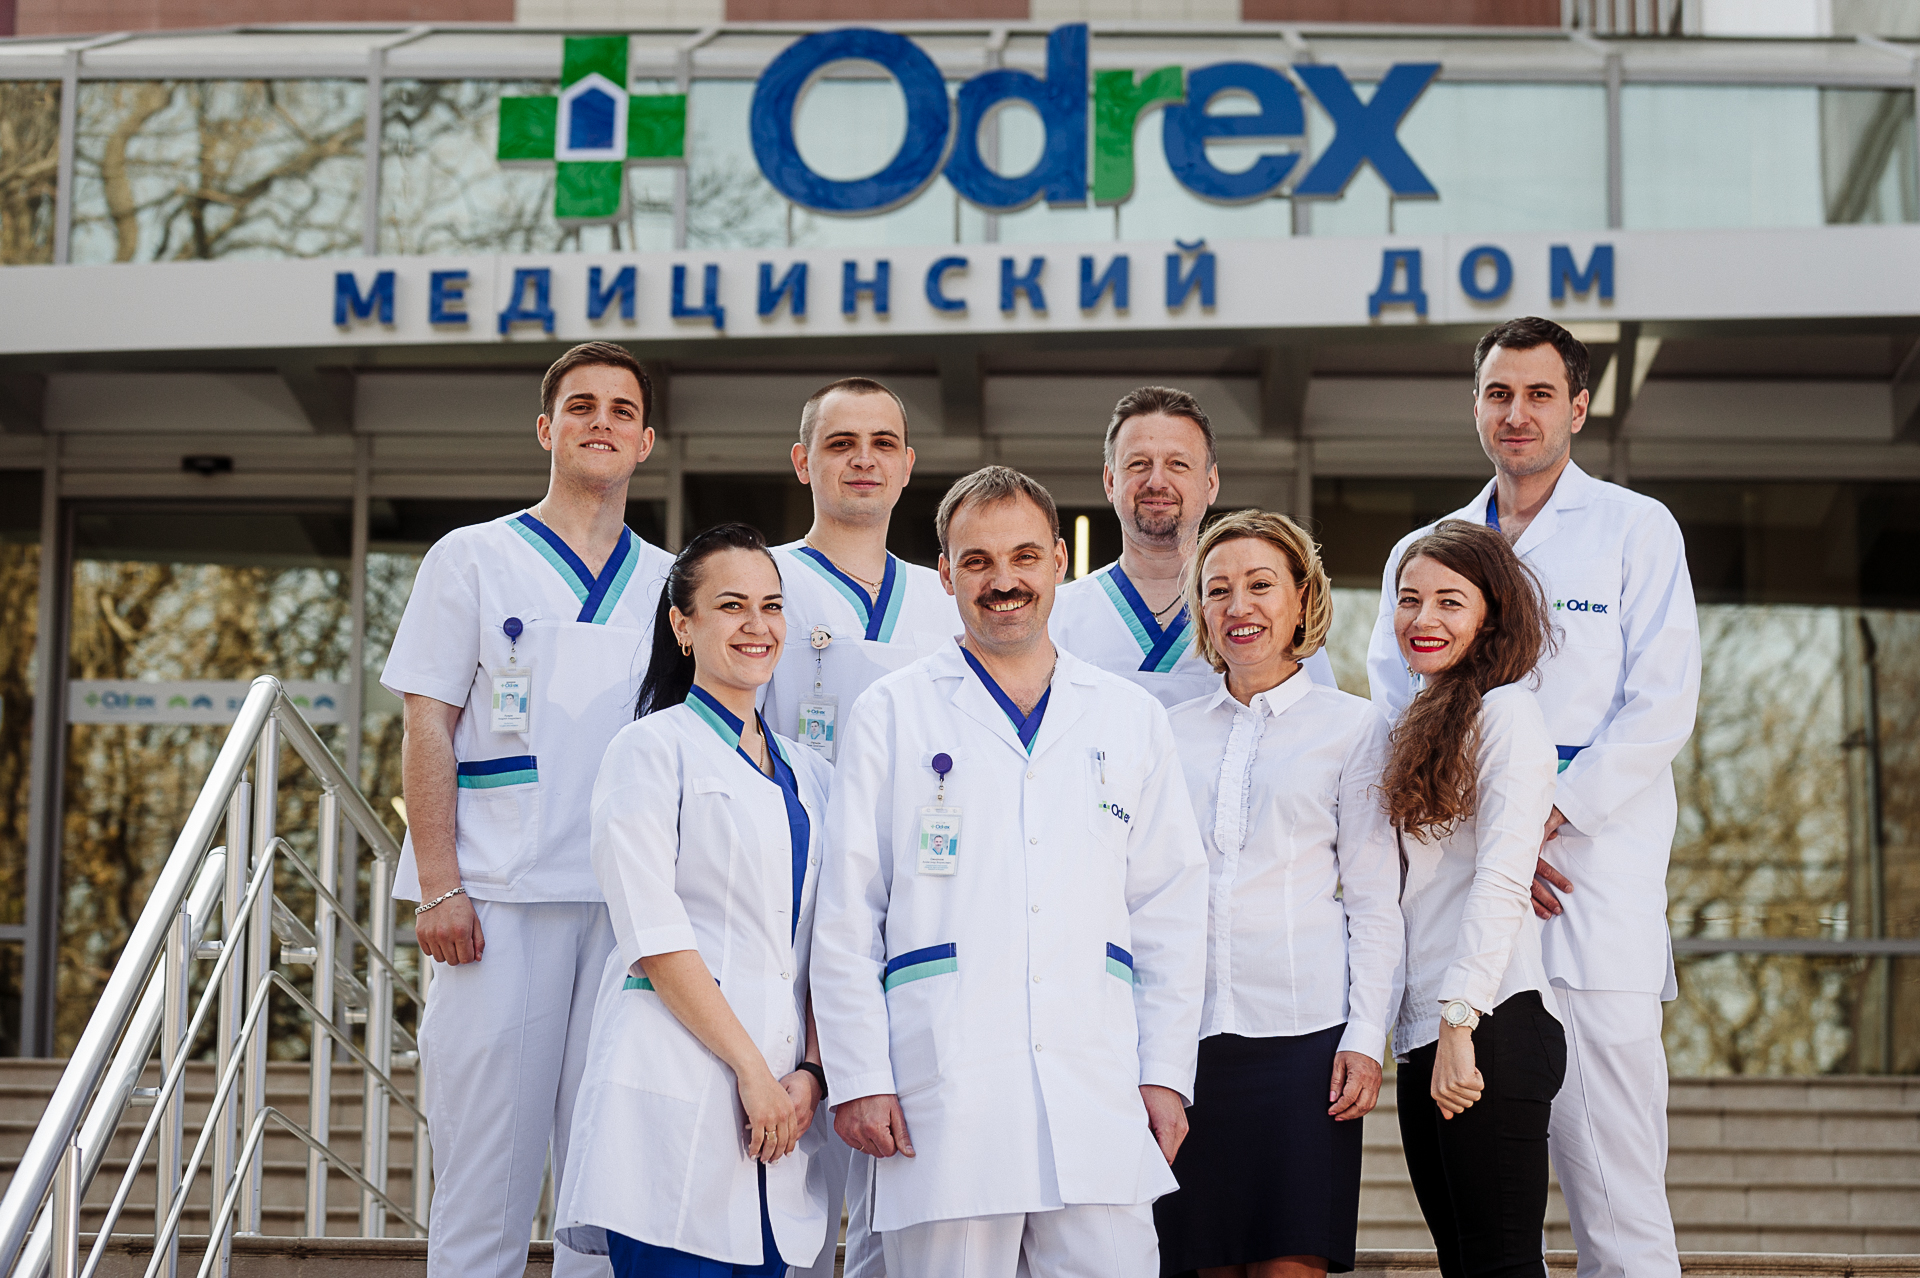 Трофические язвы на ногах: лечение и диагностика в Одессе | Медицинский дом Odrex